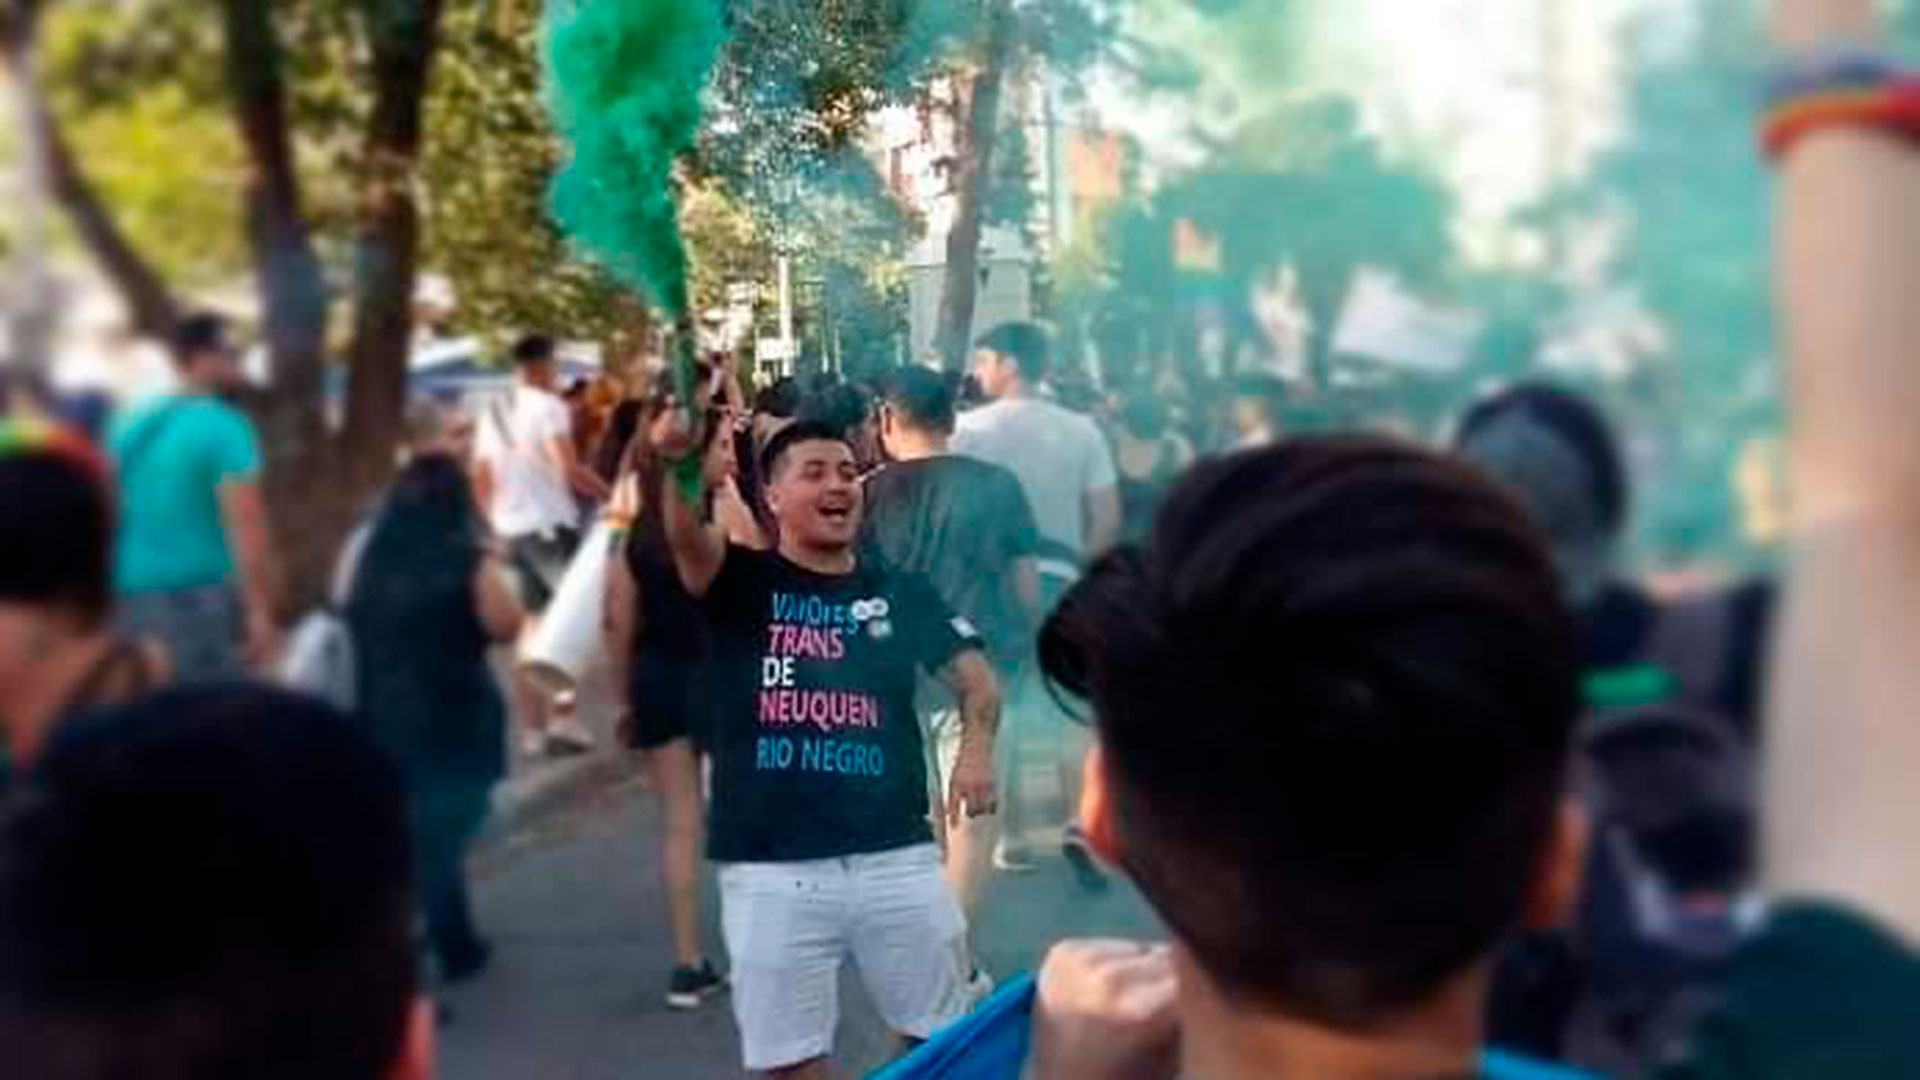 Benjamín durante una marcha a favor de la legalización y despenalización del aborto